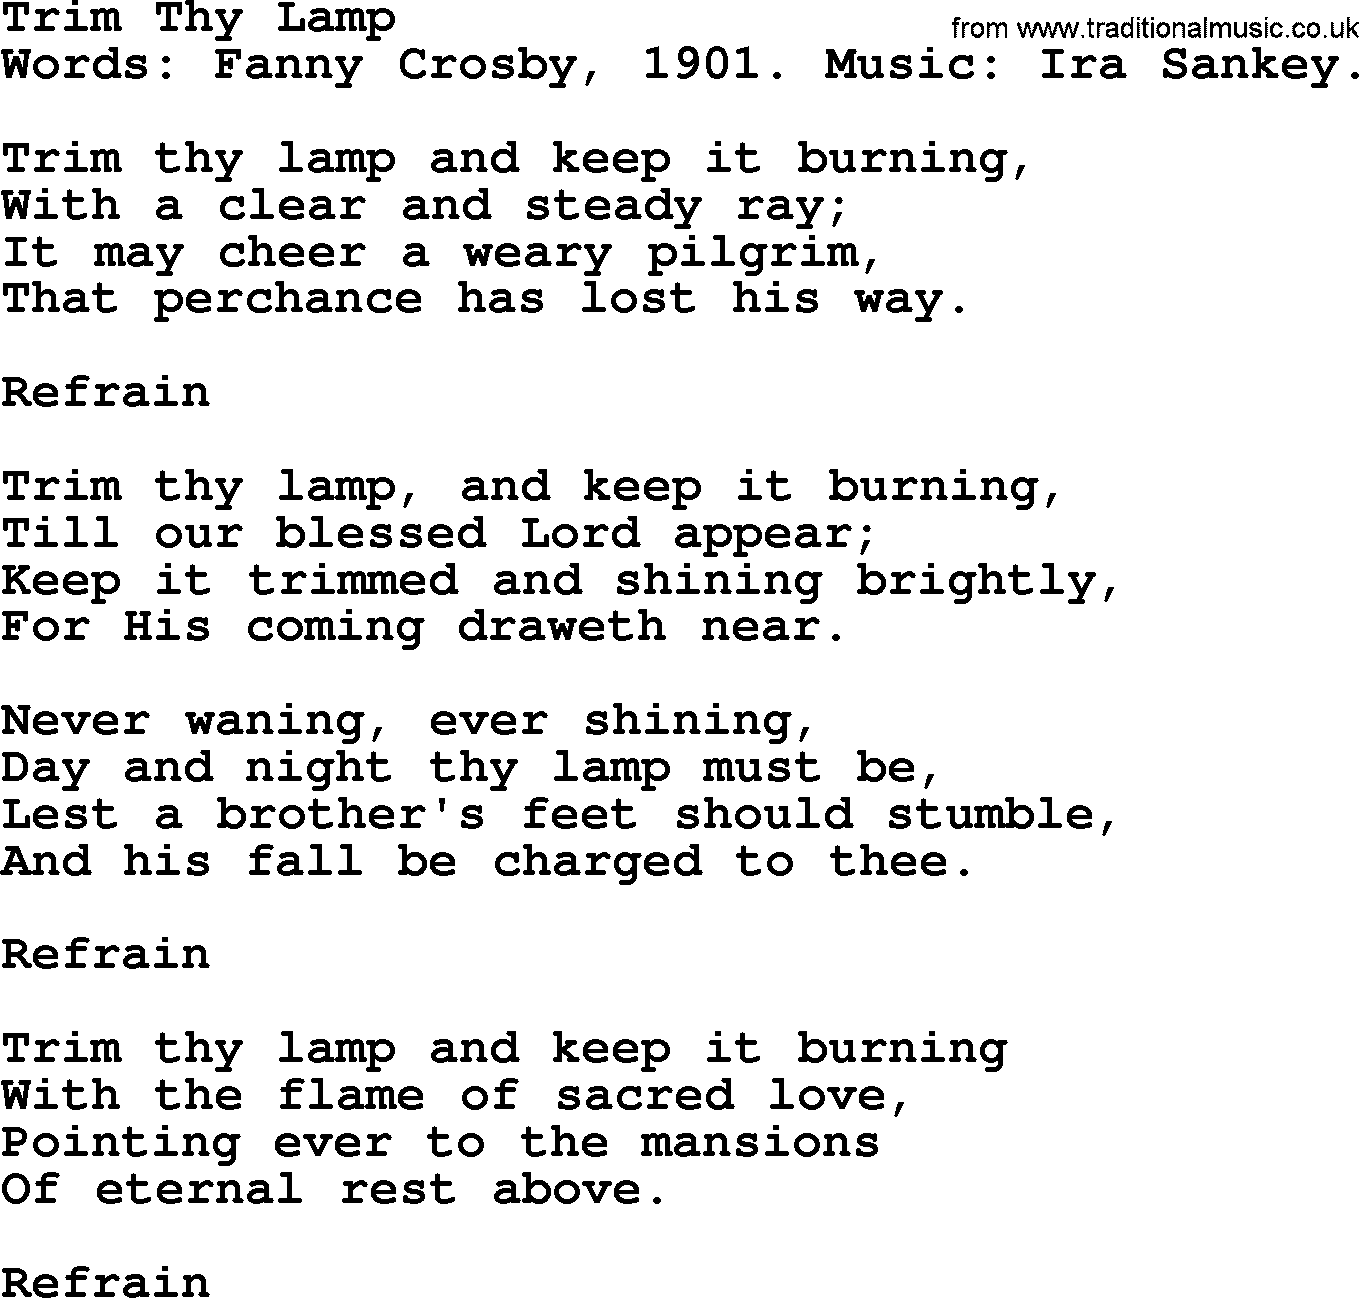 Fanny Crosby song: Trim Thy Lamp, lyrics